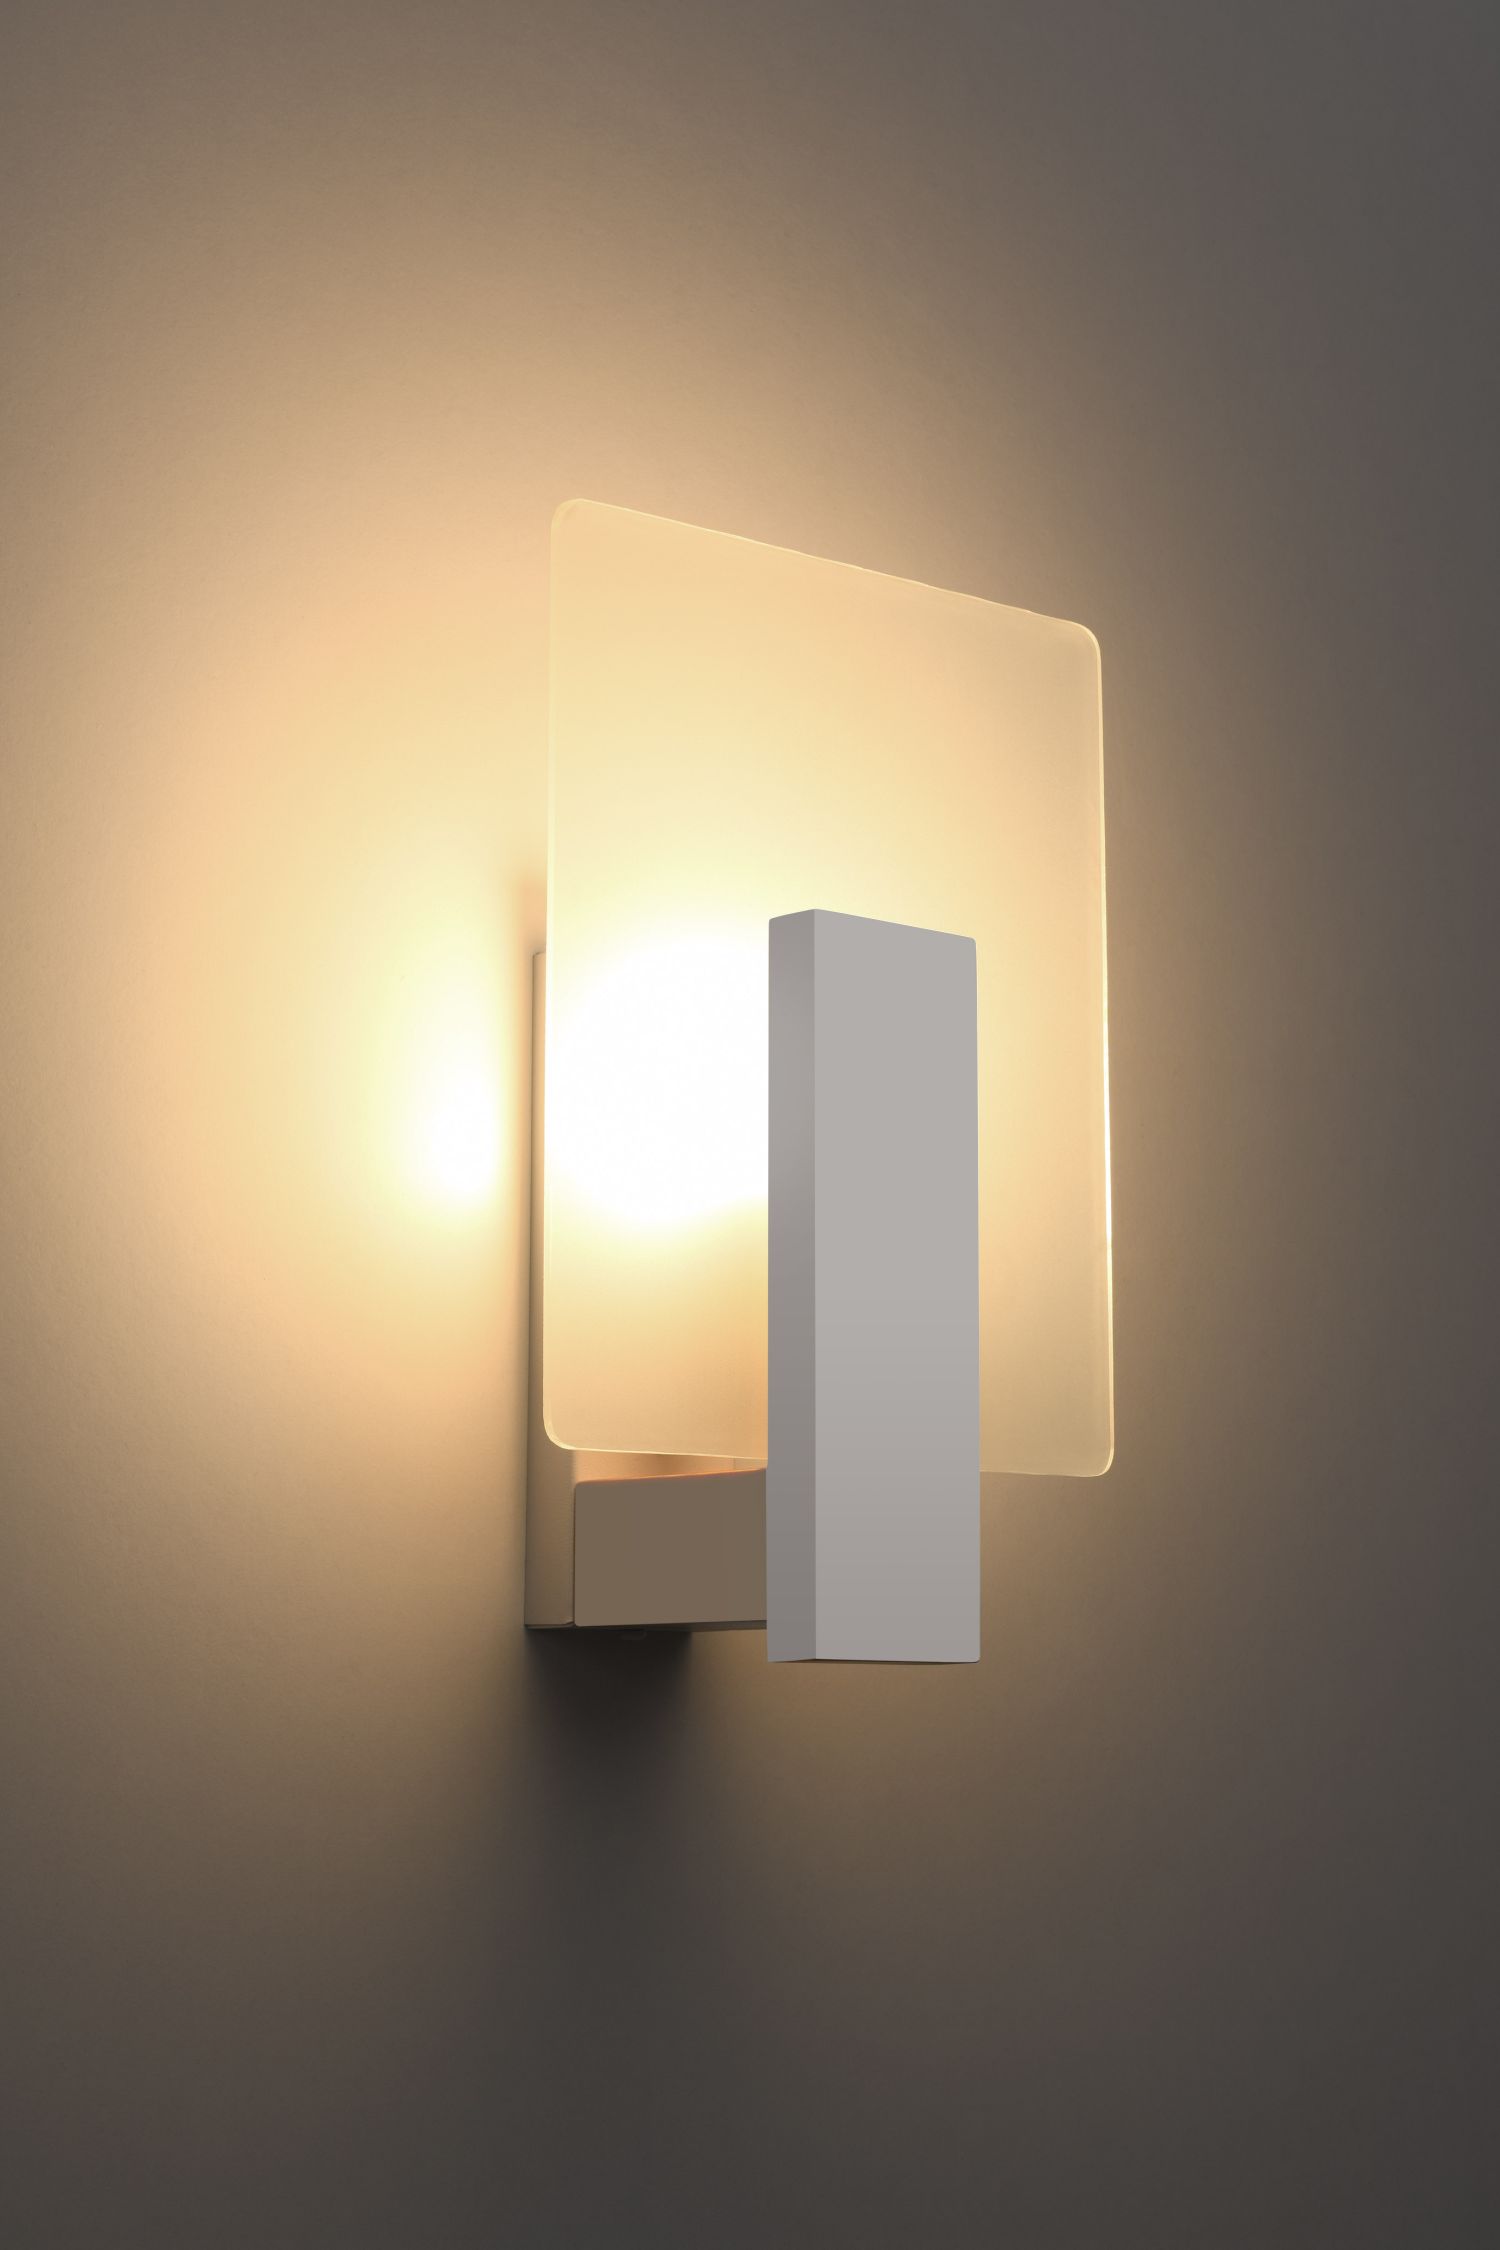 Wandlampe Glas Holz Weiß eckig E14 blendarm innen